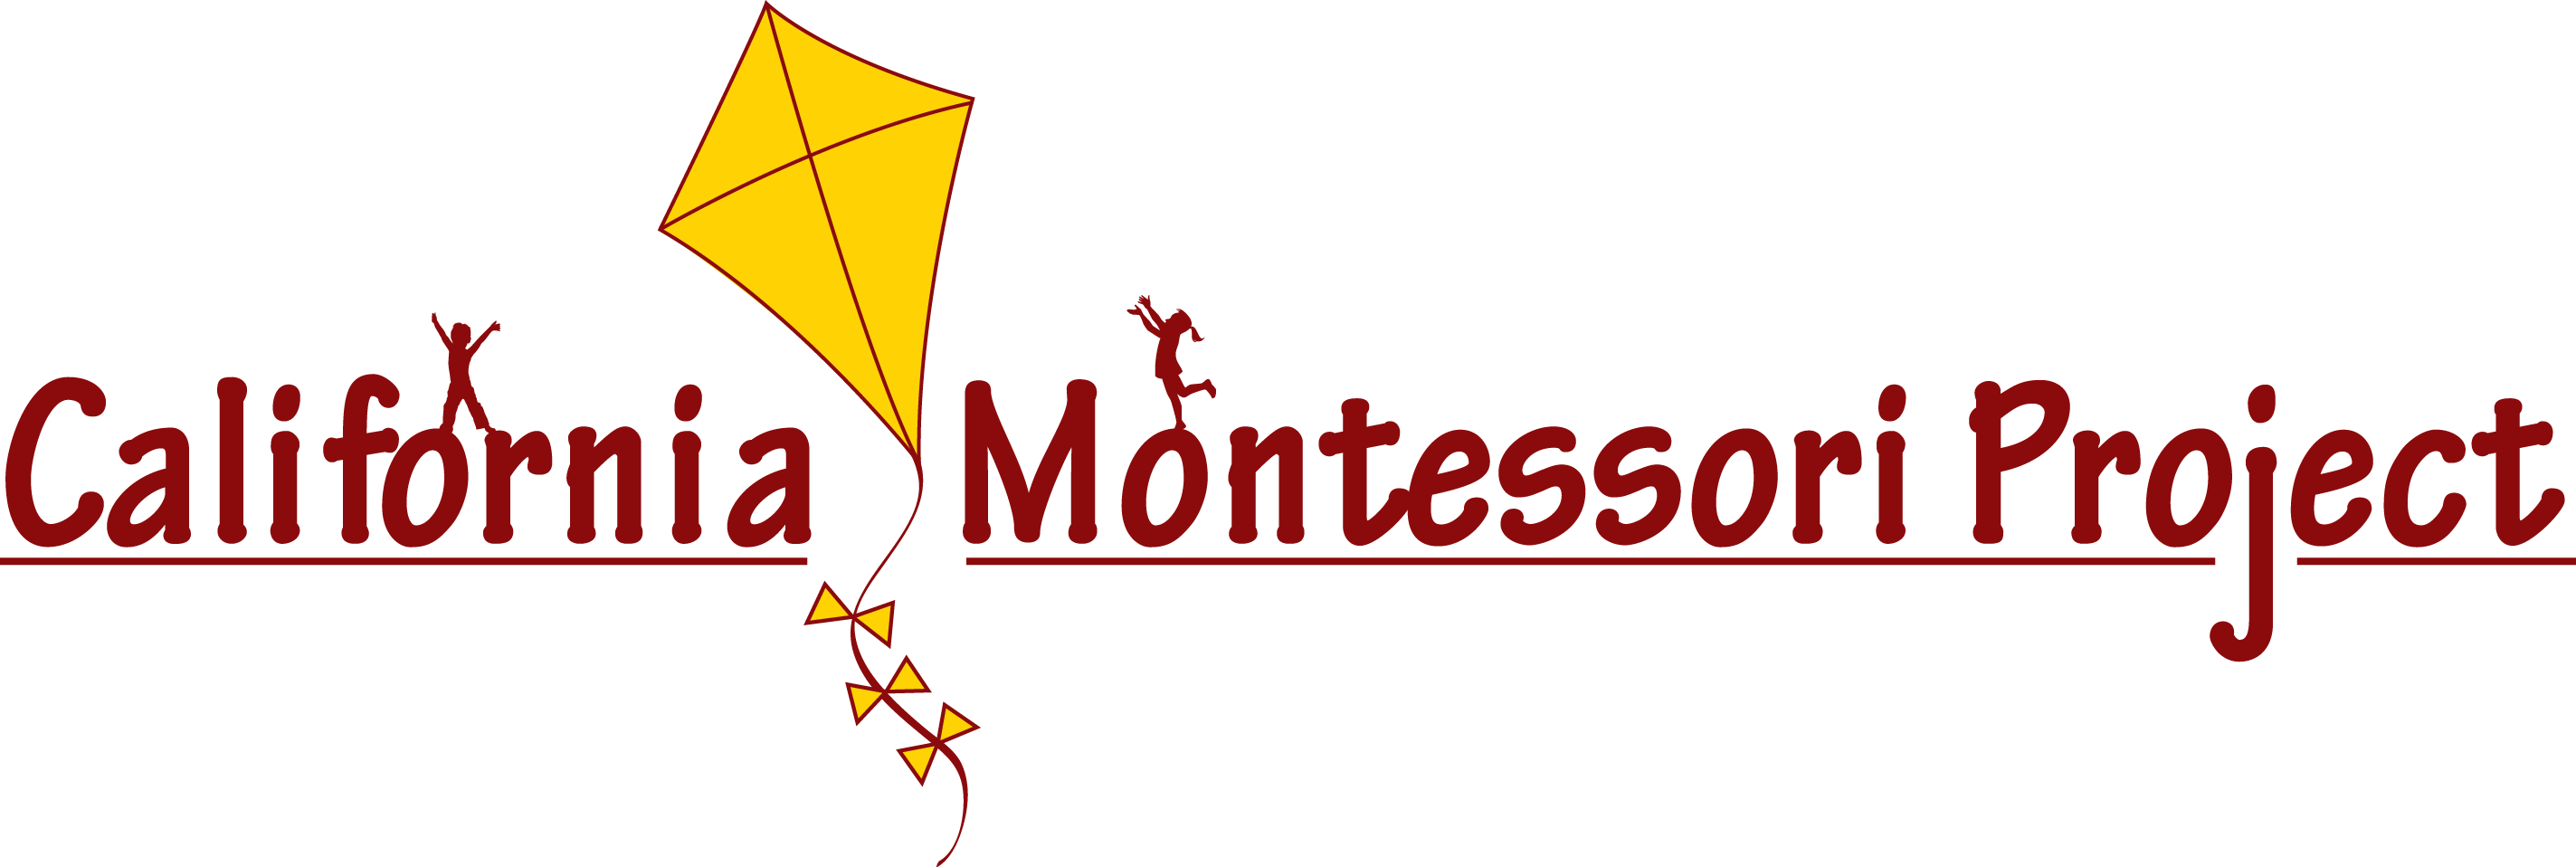 California Montessori Project Logo